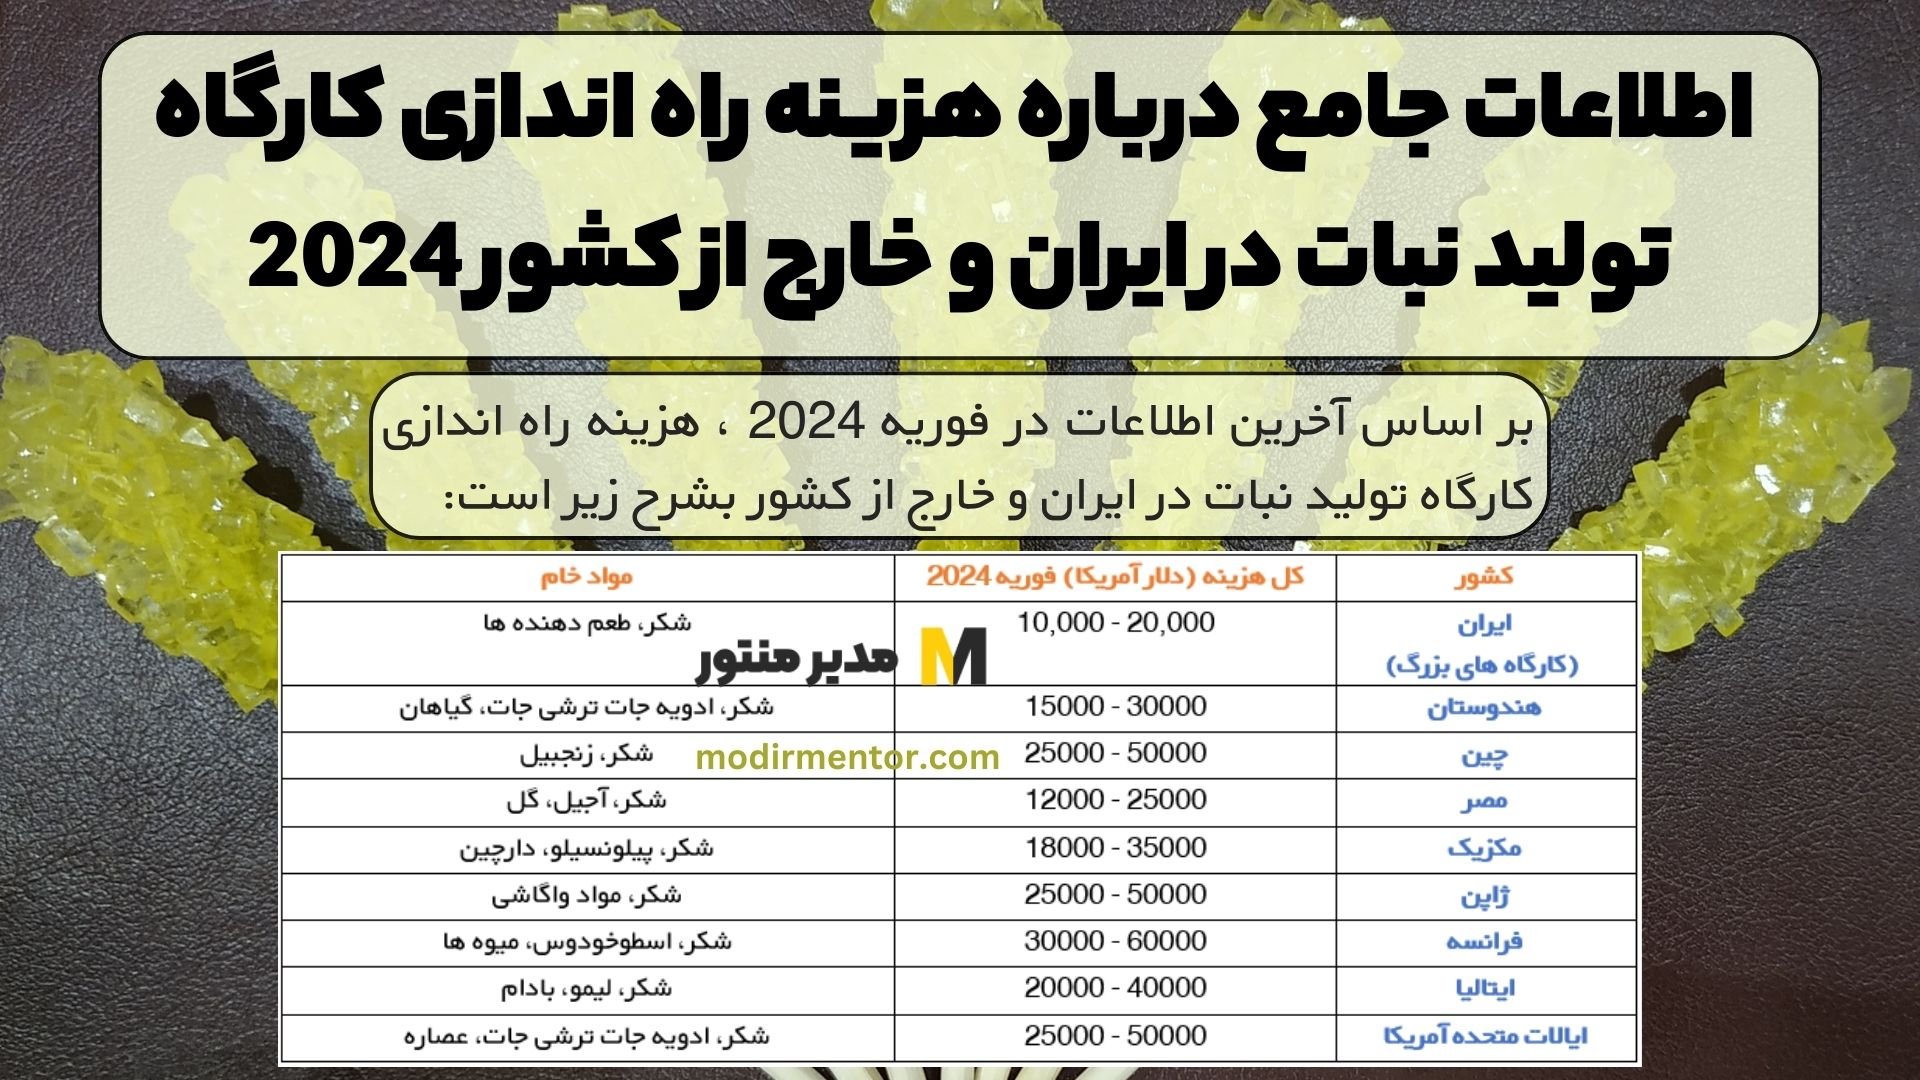 اطلاعات جامع درباره هزینه راه اندازی کارگاه تولید نبات در ایران و خارج از کشور 2024